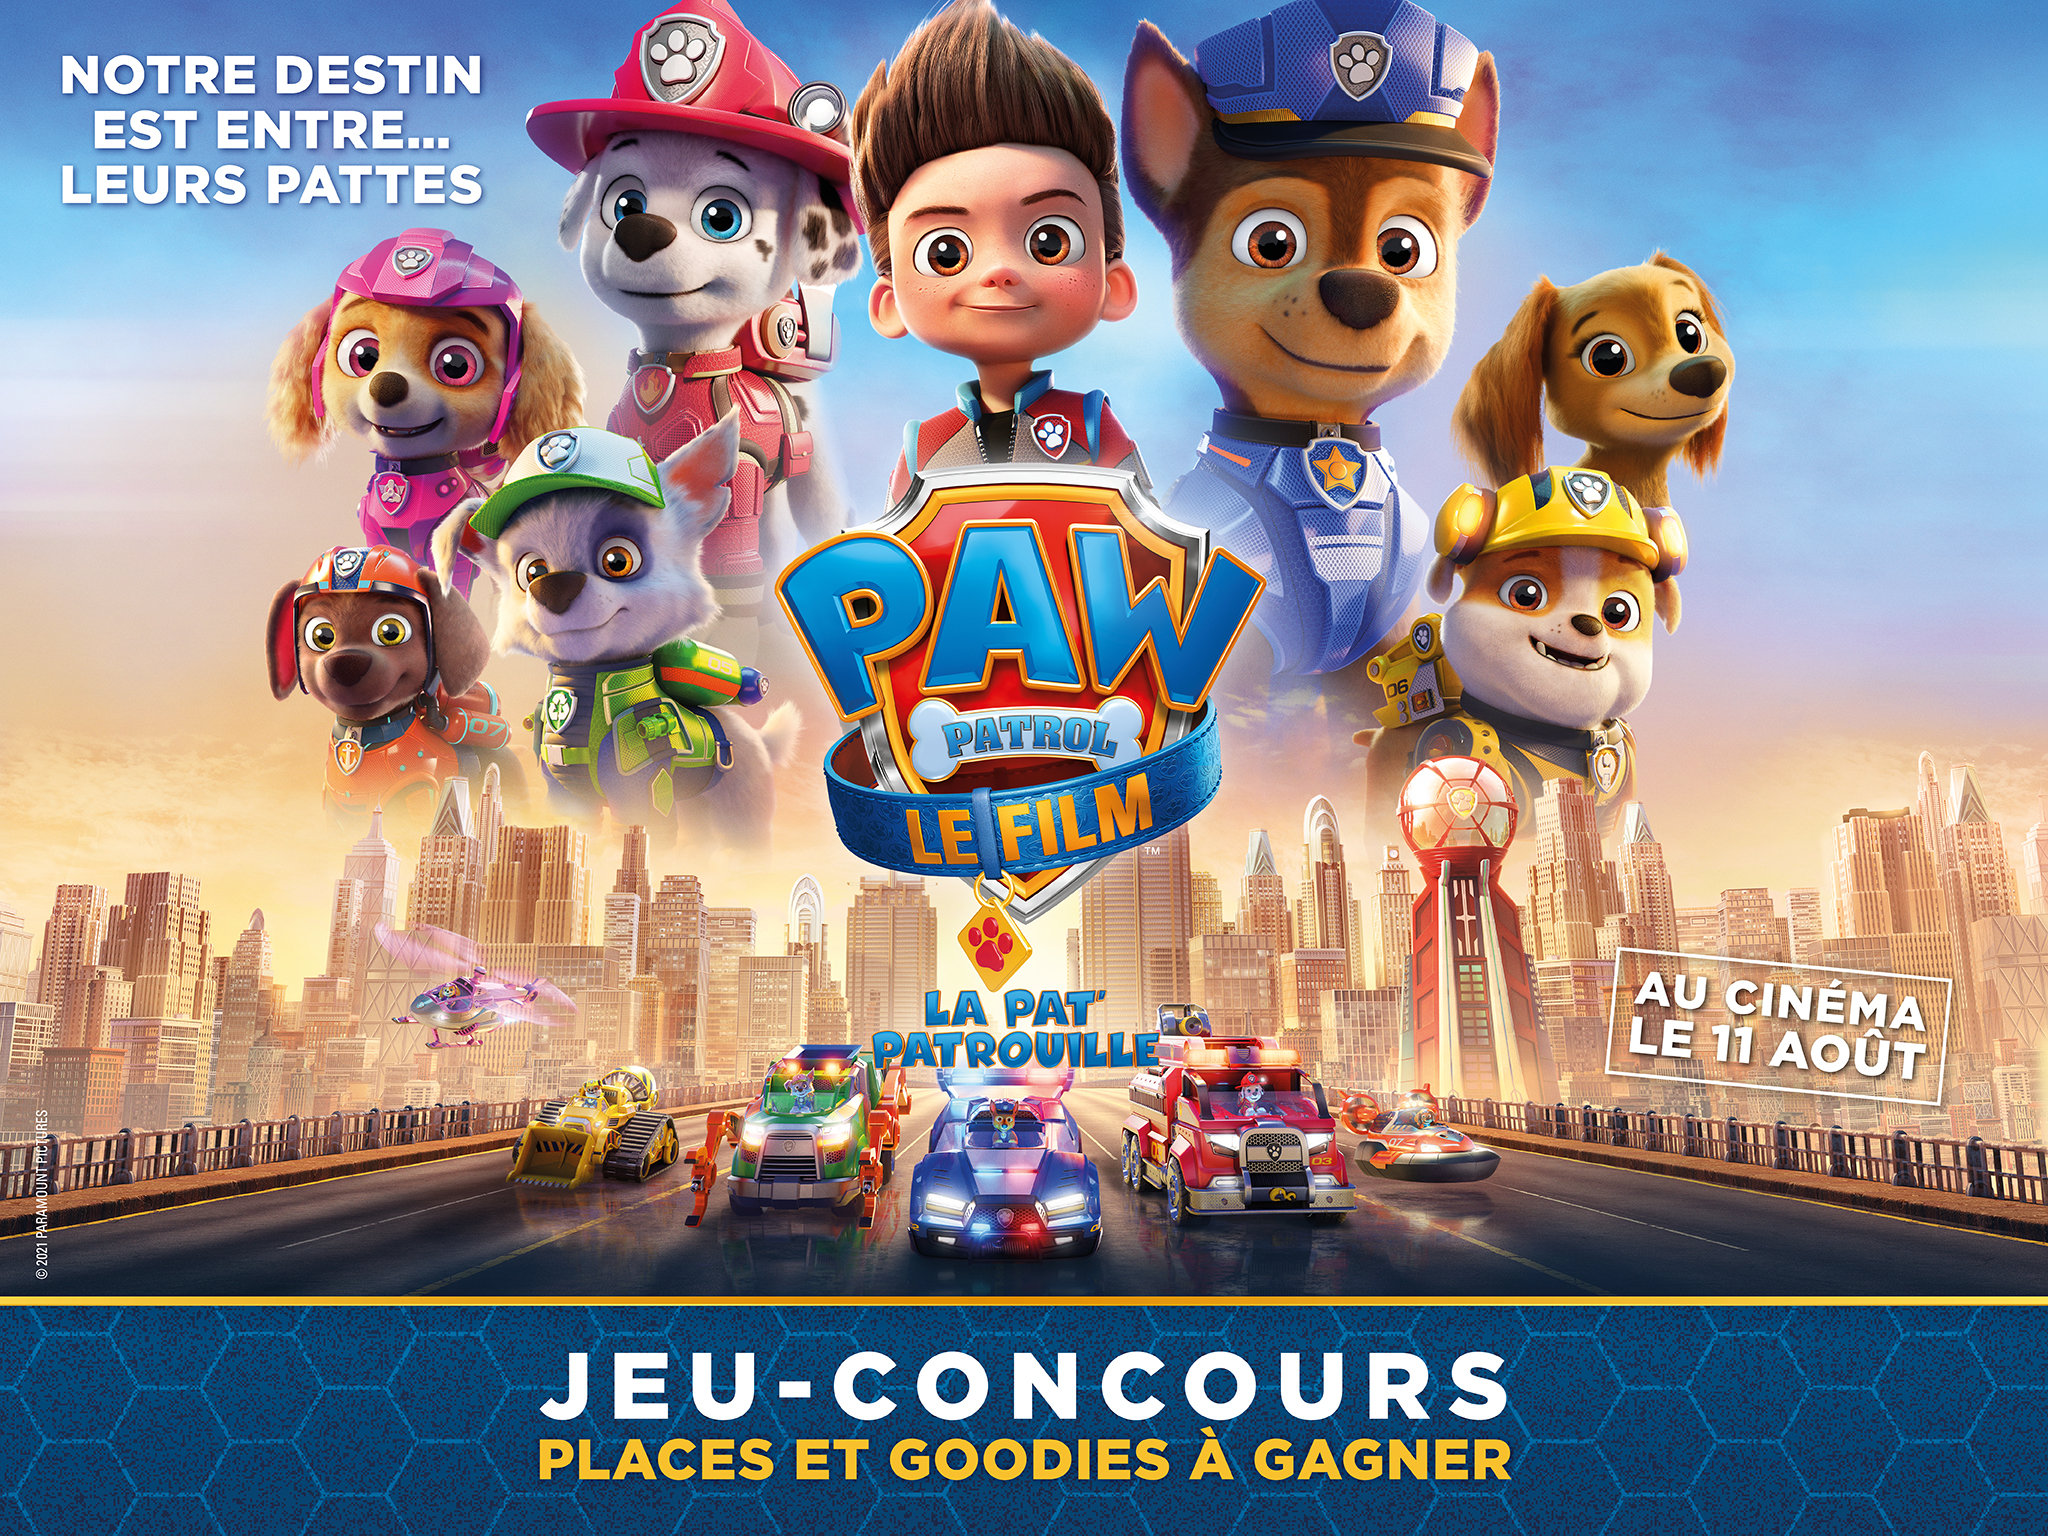 La Pat' Patrouille - Le Film - Paramount Pictures France